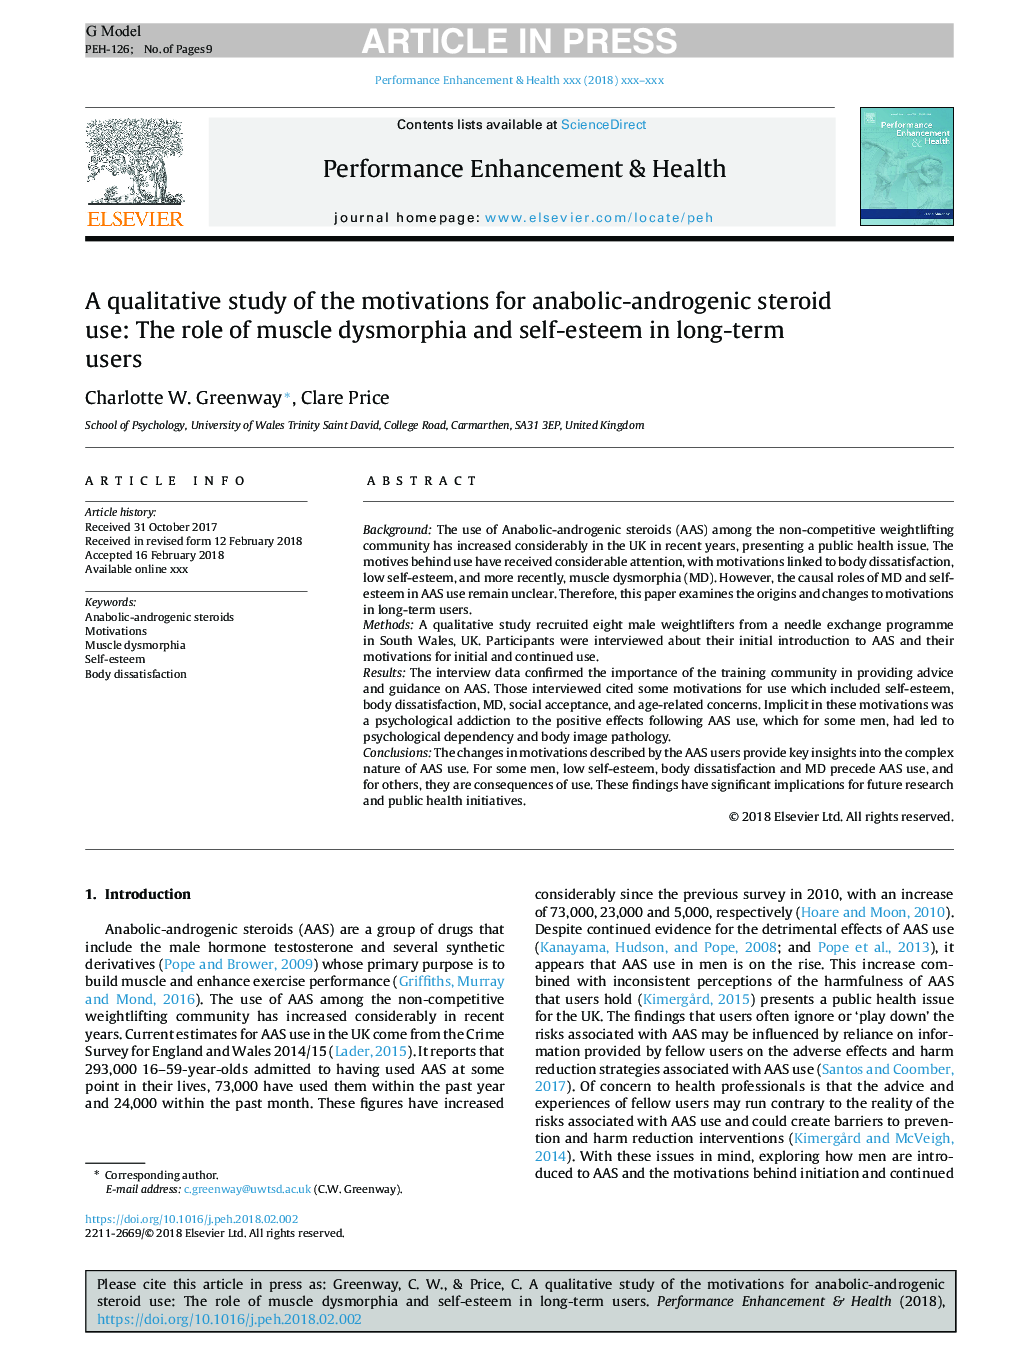 یک مطالعه کیفی انگیزه های استفاده از استروئید آنابولیک آندروژنیک: نقش دیستورفیا عضلانی و عزت نفس در افراد درازمدت 